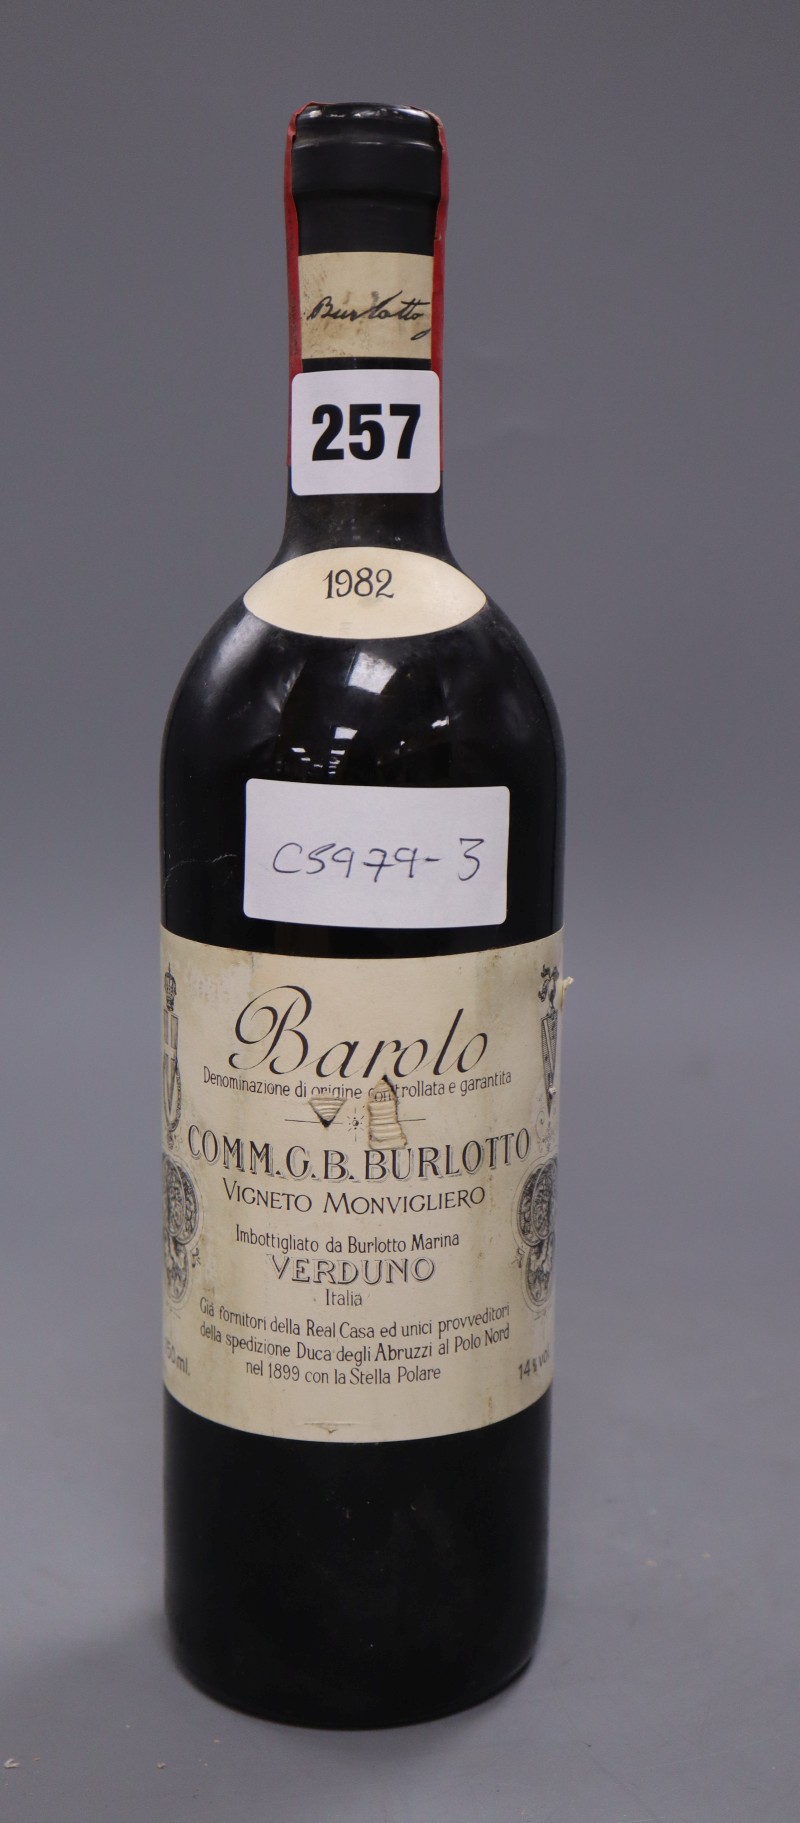 A bottle of Barolo Comte Burlotto 1982